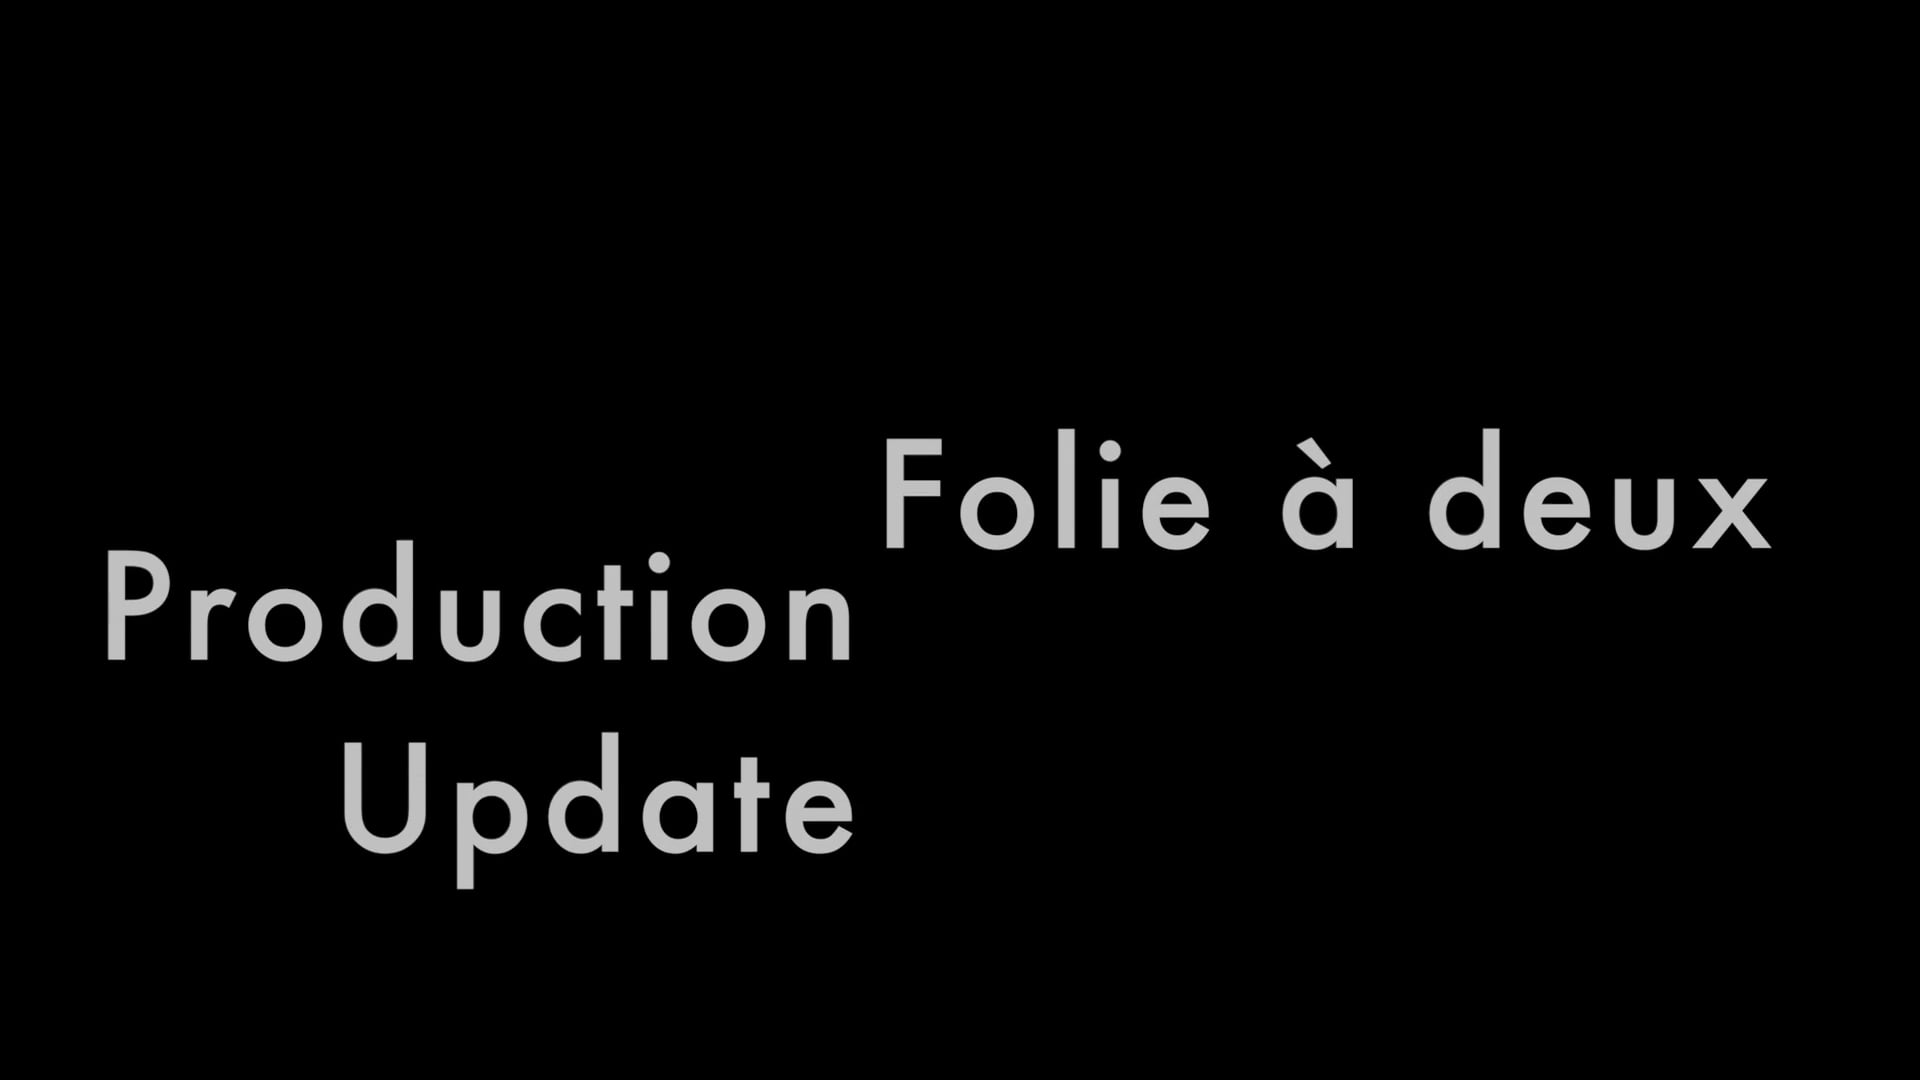 Production Update zu "Folie à deux" 2.9.17 - Fabian Schneeberg